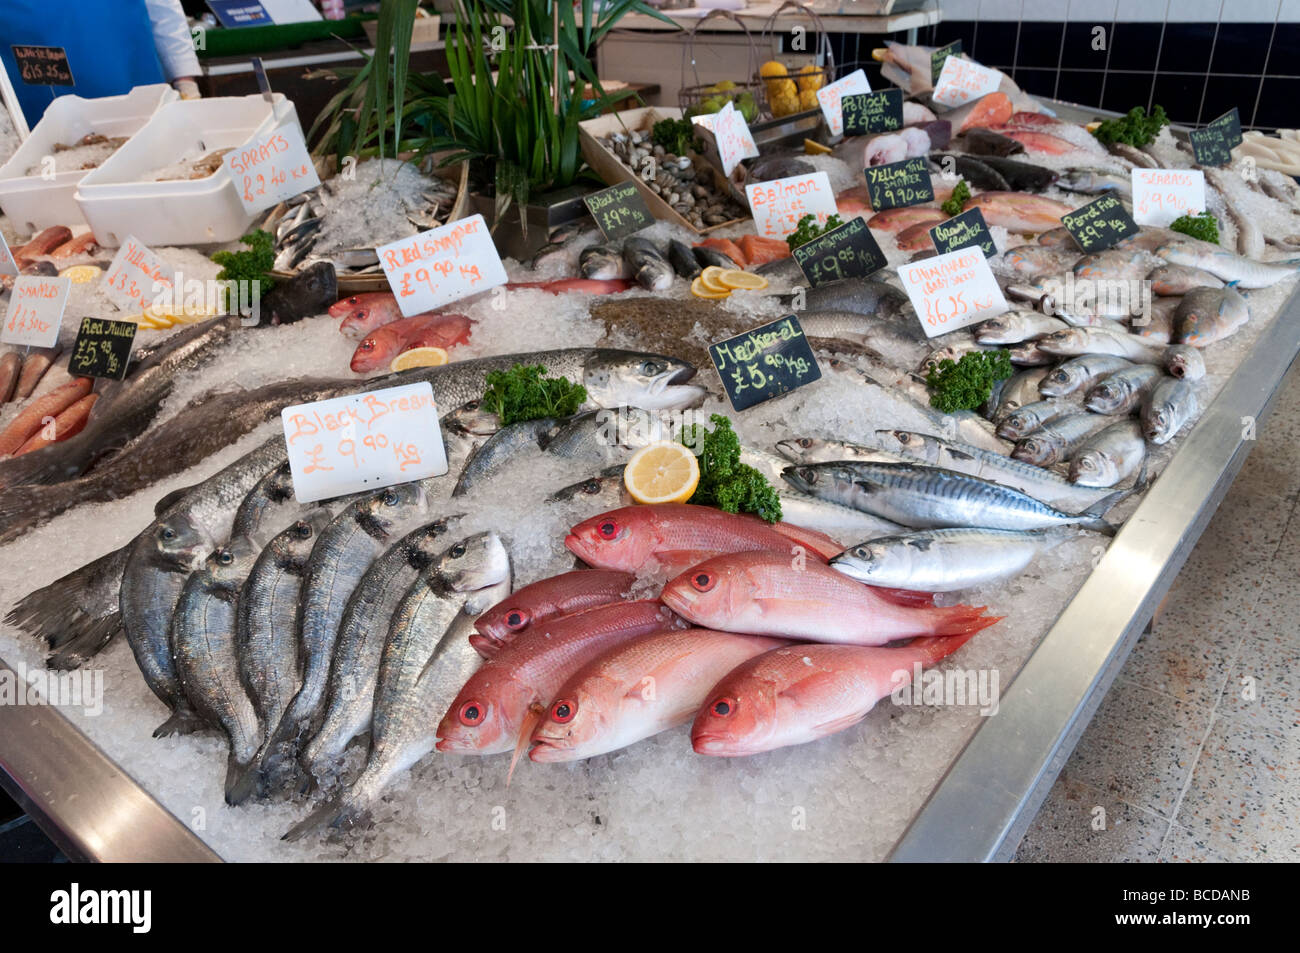 Le poisson frais local affichage à Londres Angleterre Royaume-uni poissonnier Banque D'Images